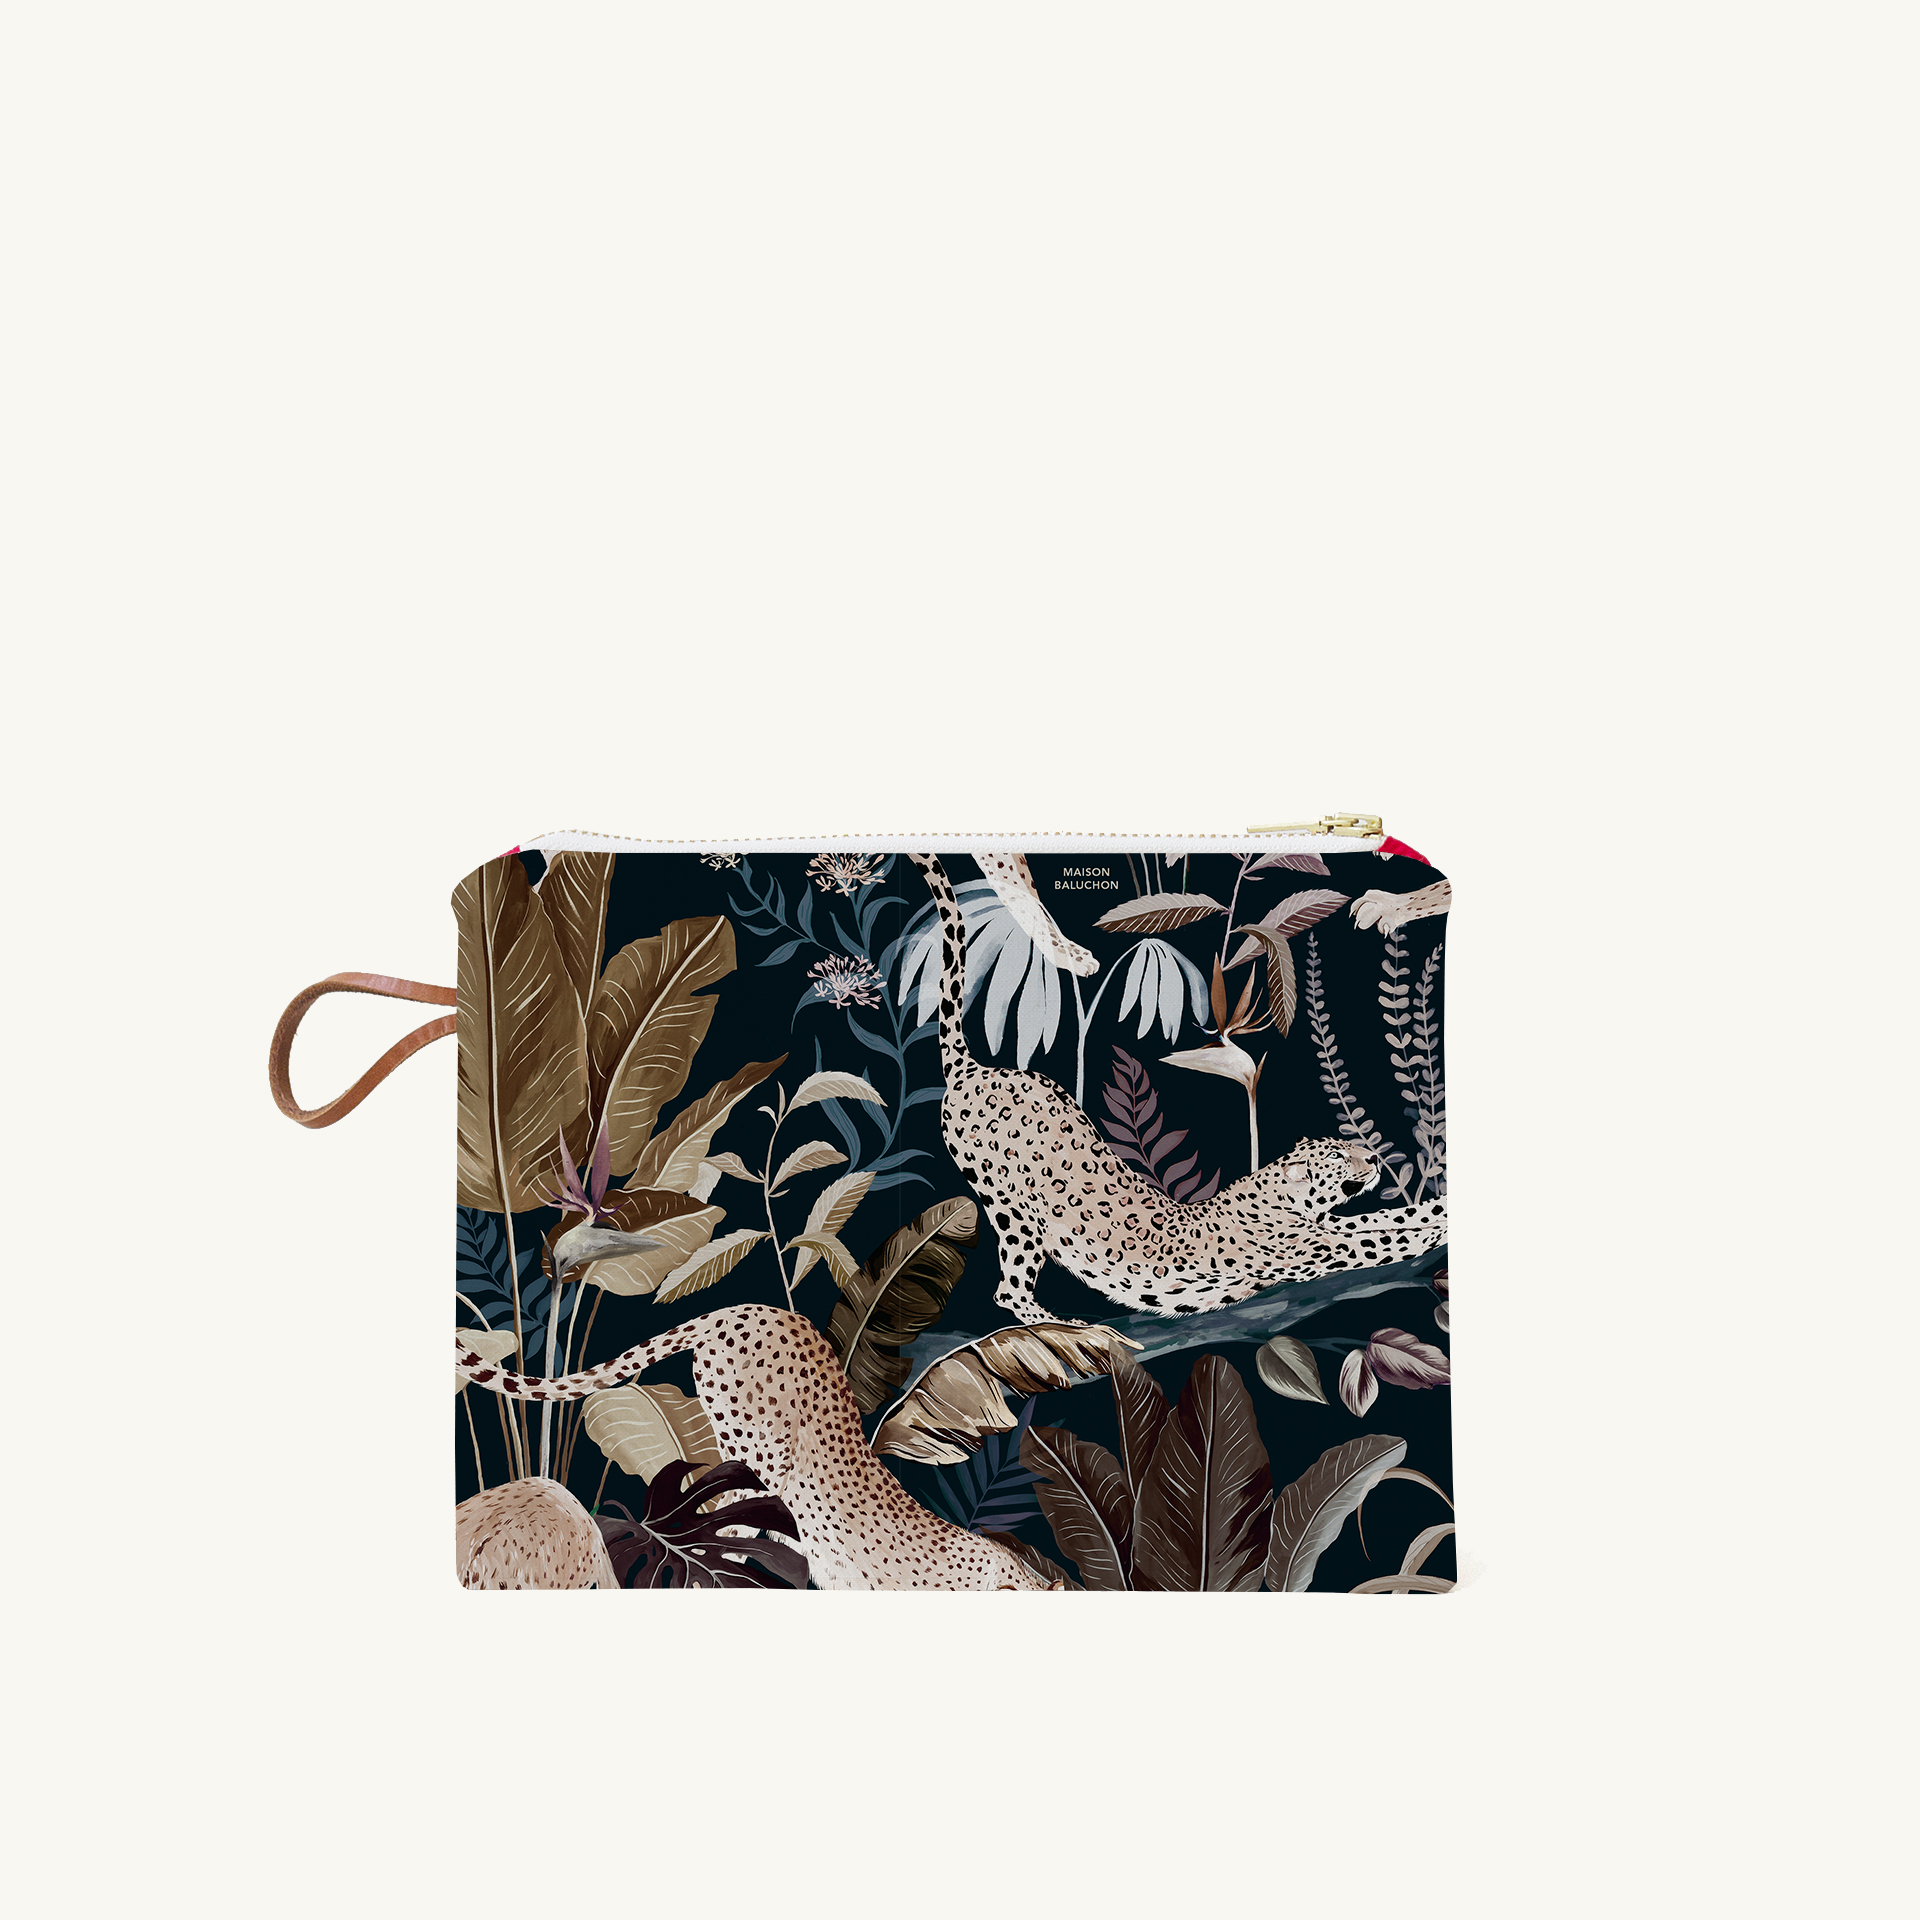 Petite pochette en tissu design Sauvage N°25 - Maison Baluchon